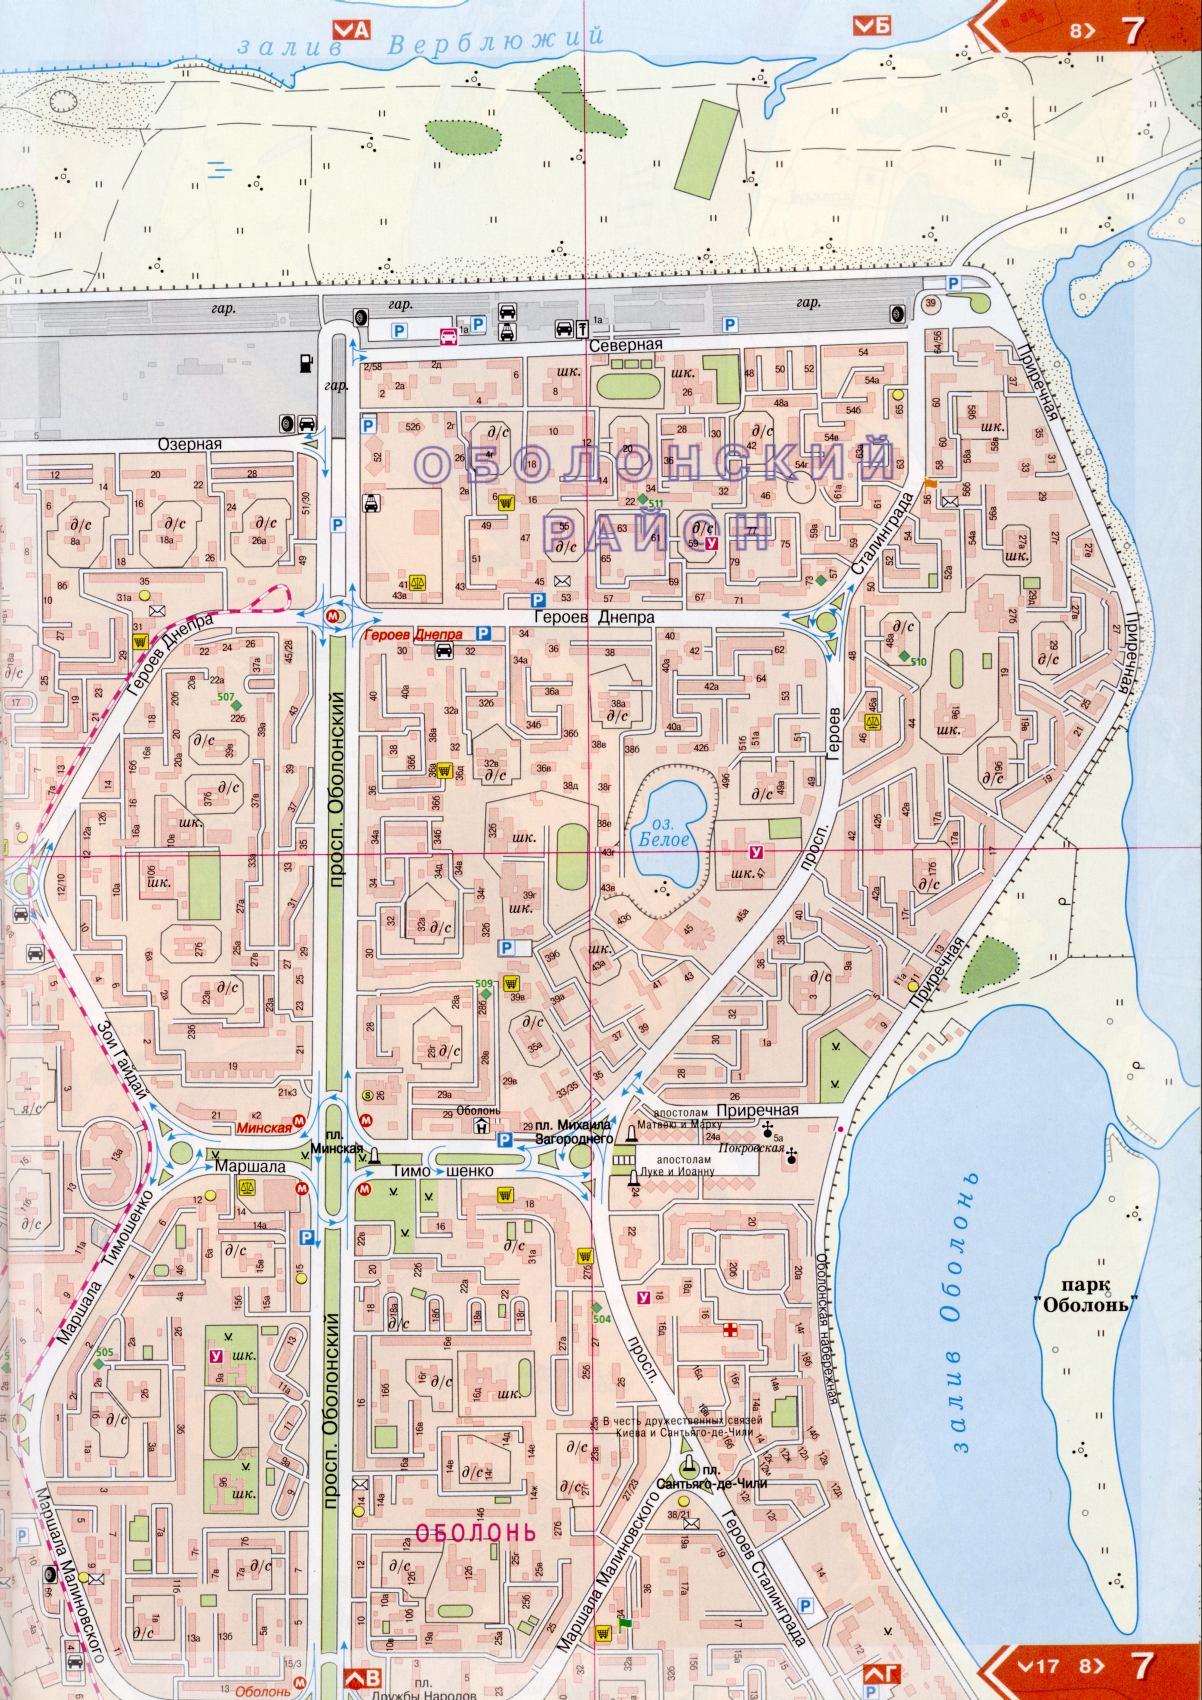 Карта Киева подробная в 1см=150м на 45 листах. Карта г.Киев из атласа автомобильных дорог. Скачать бесплатно подробную карту , E0